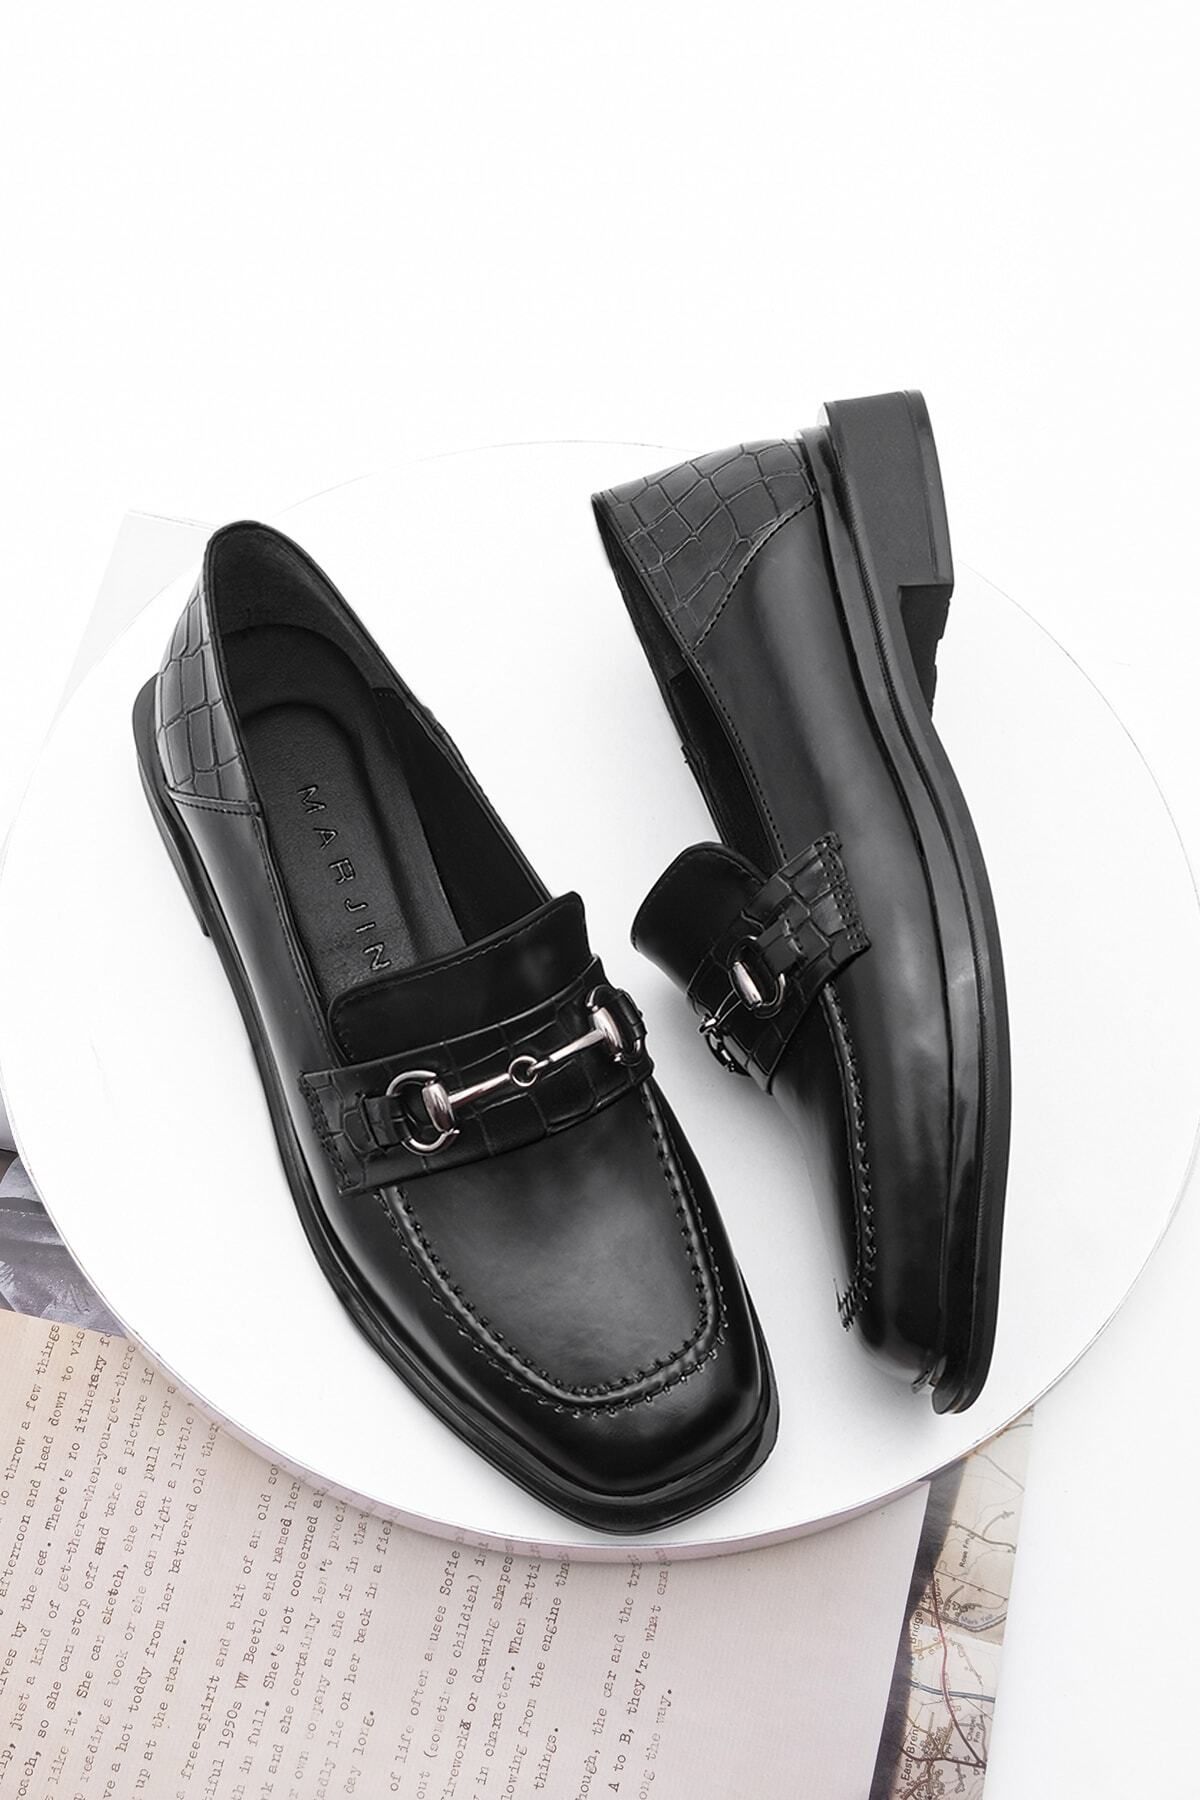 Marjin Kadın Loafer Makosen Ayakkabı Küt Burun Tokalı Günlük Ayakkabı Races siyah